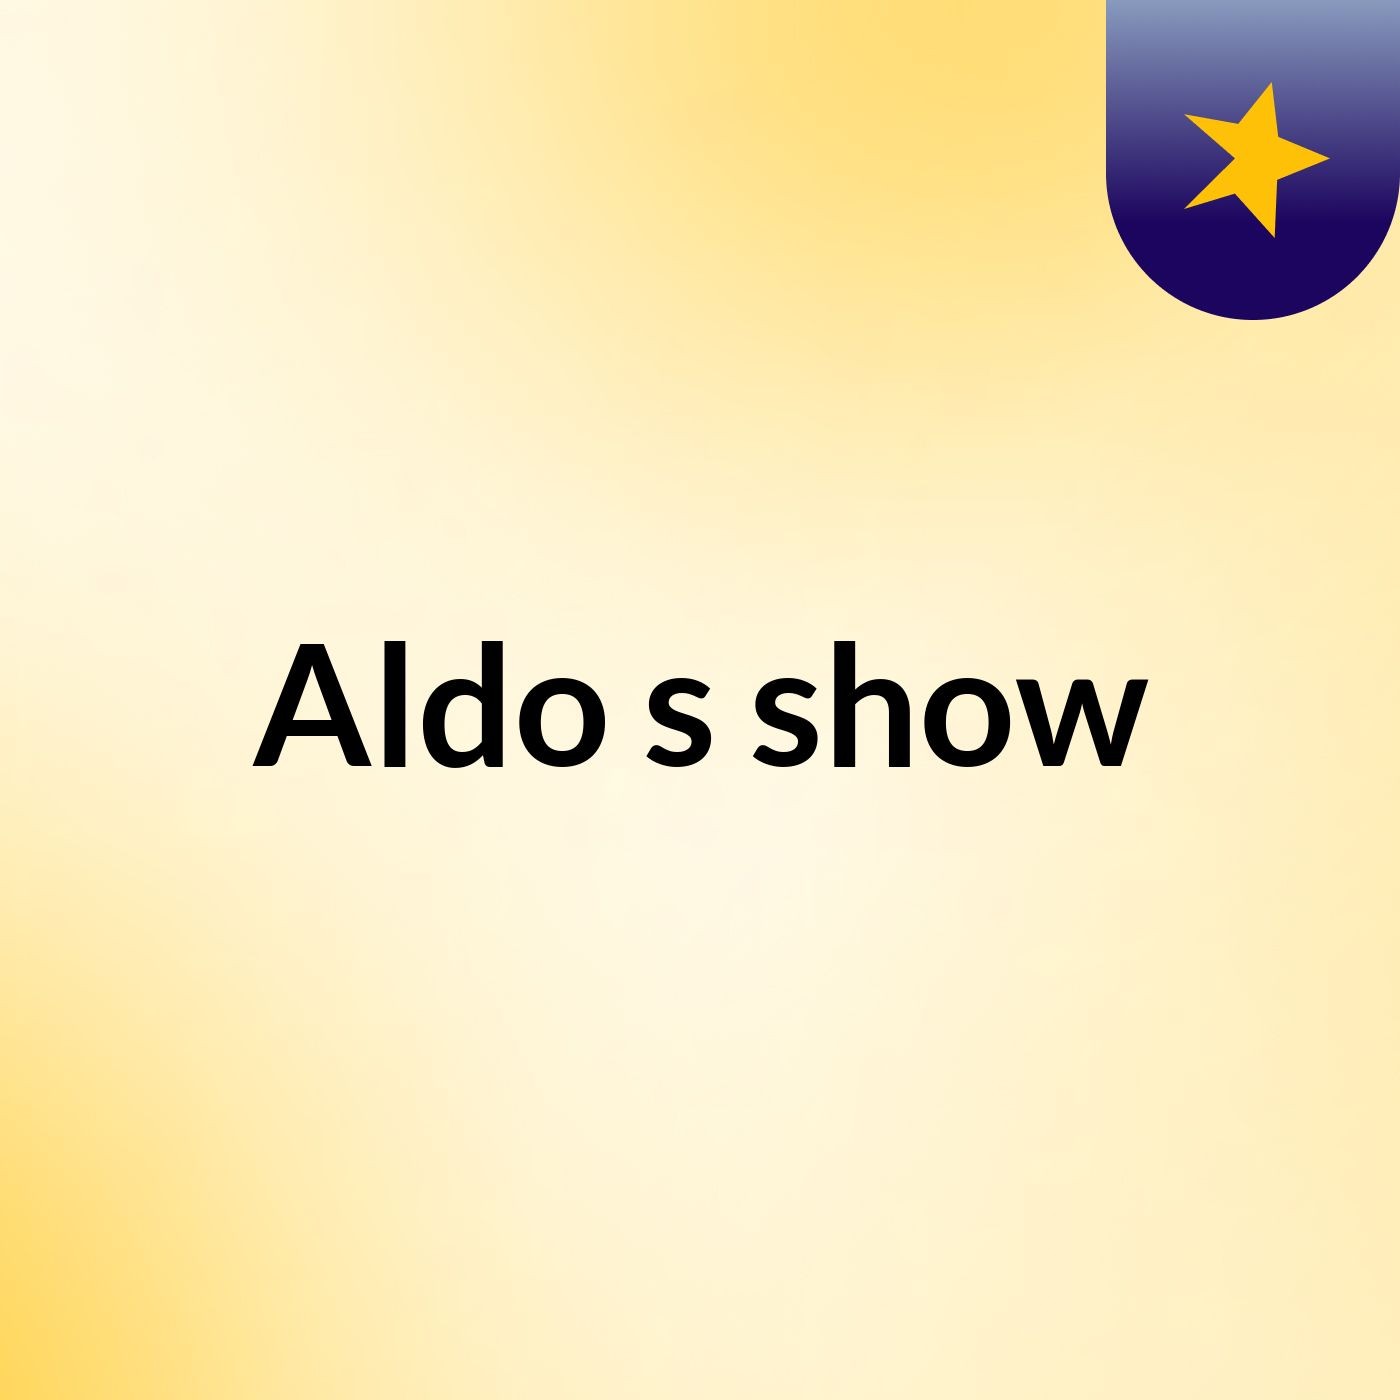 Aldo's show